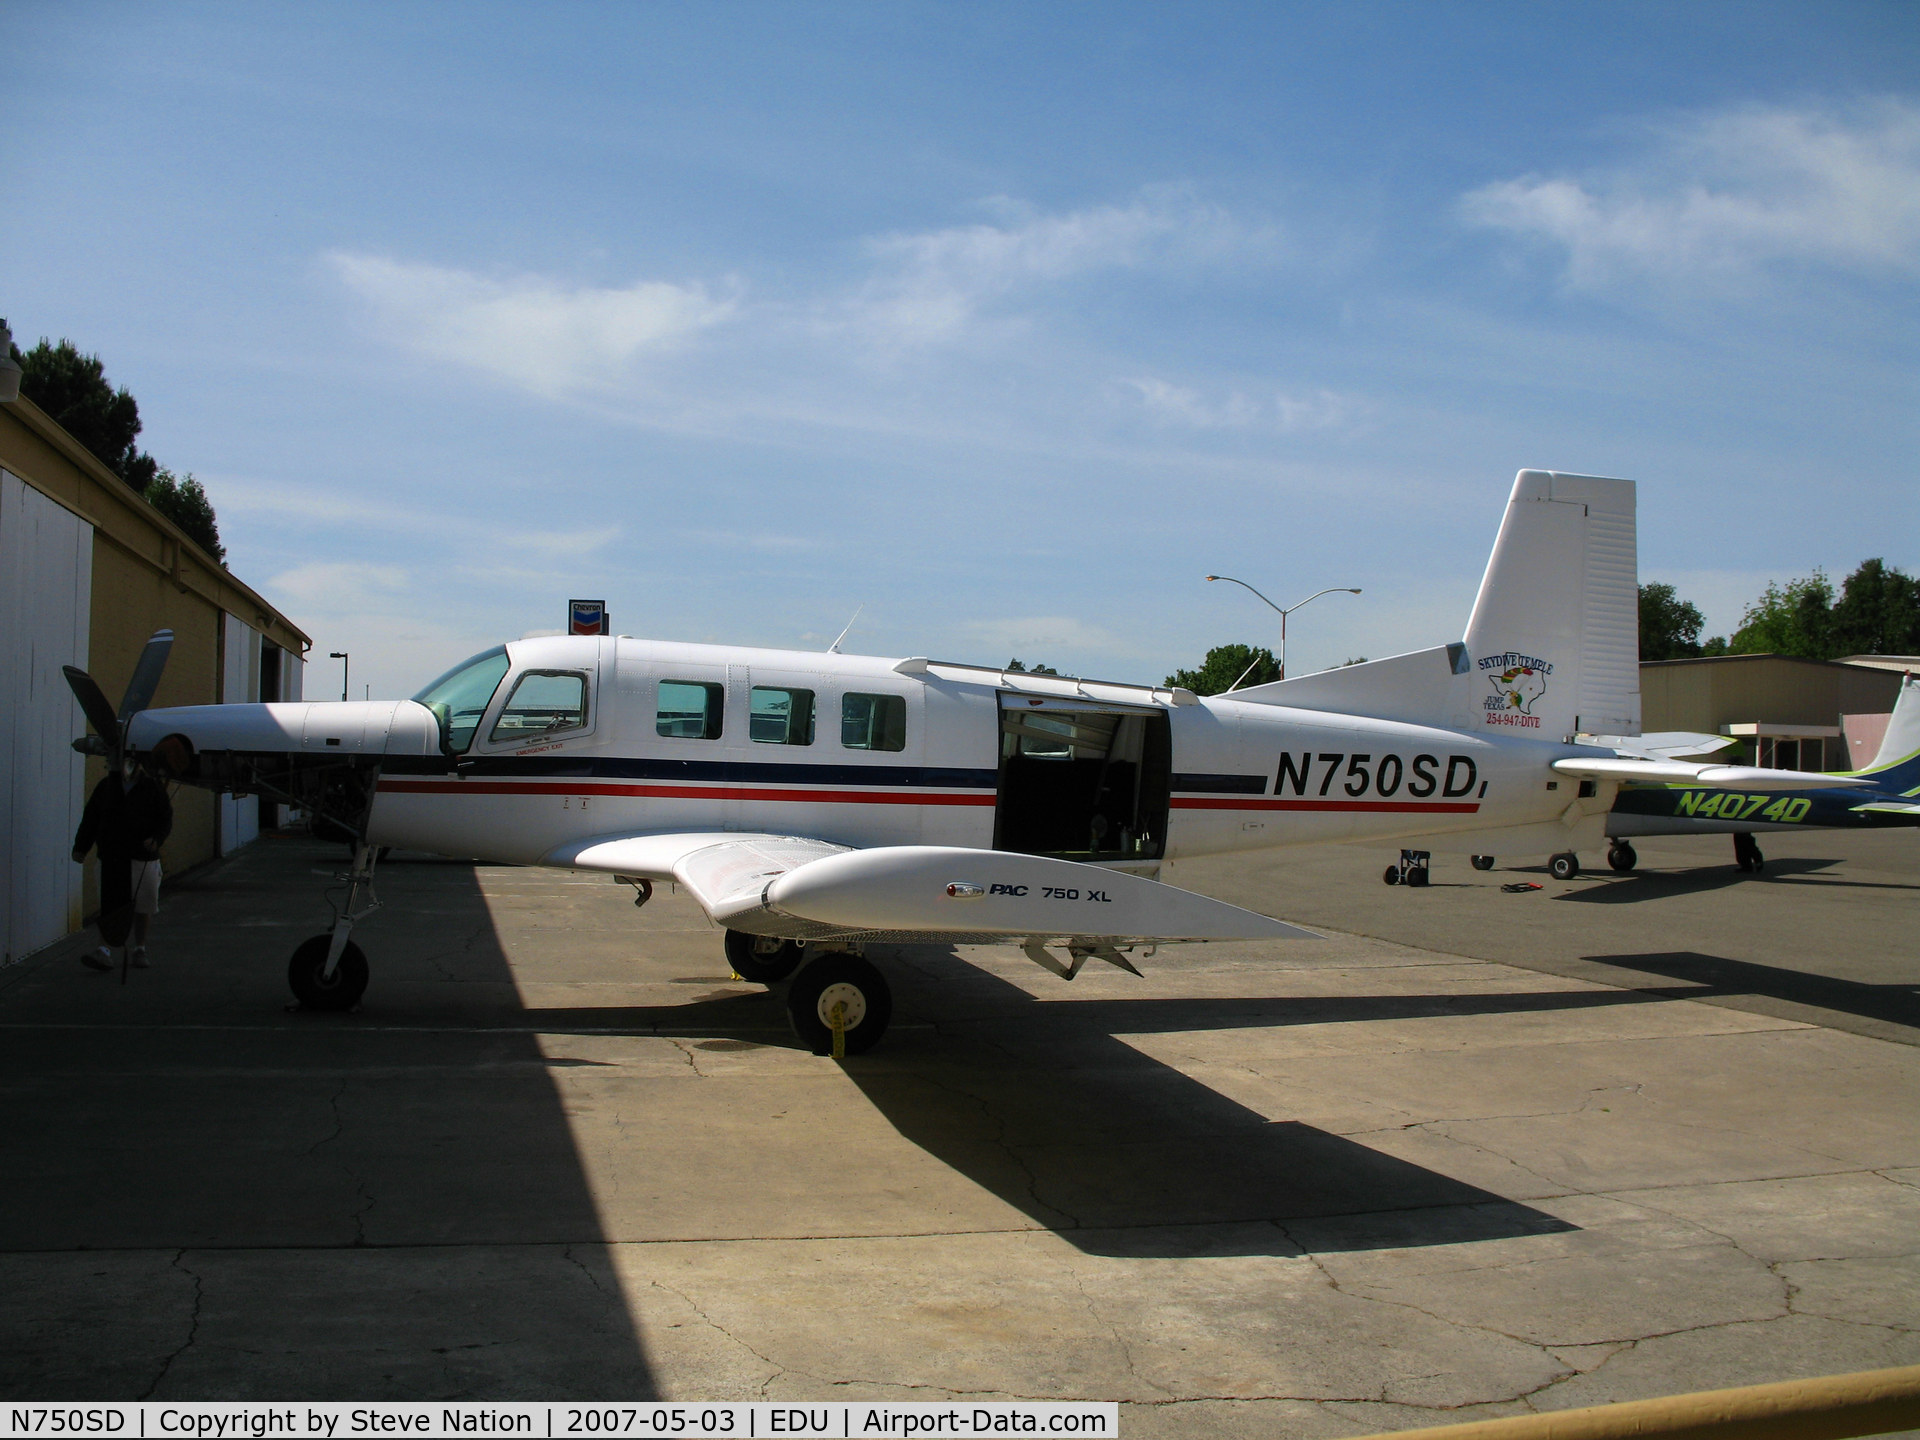 N750SD, 2004 Pacific Aerospace 750XL C/N 111, Skydive Temple (TX) 2004 Pacific Aerospace 750XL for skydiving @ University Airport (Davis), CA